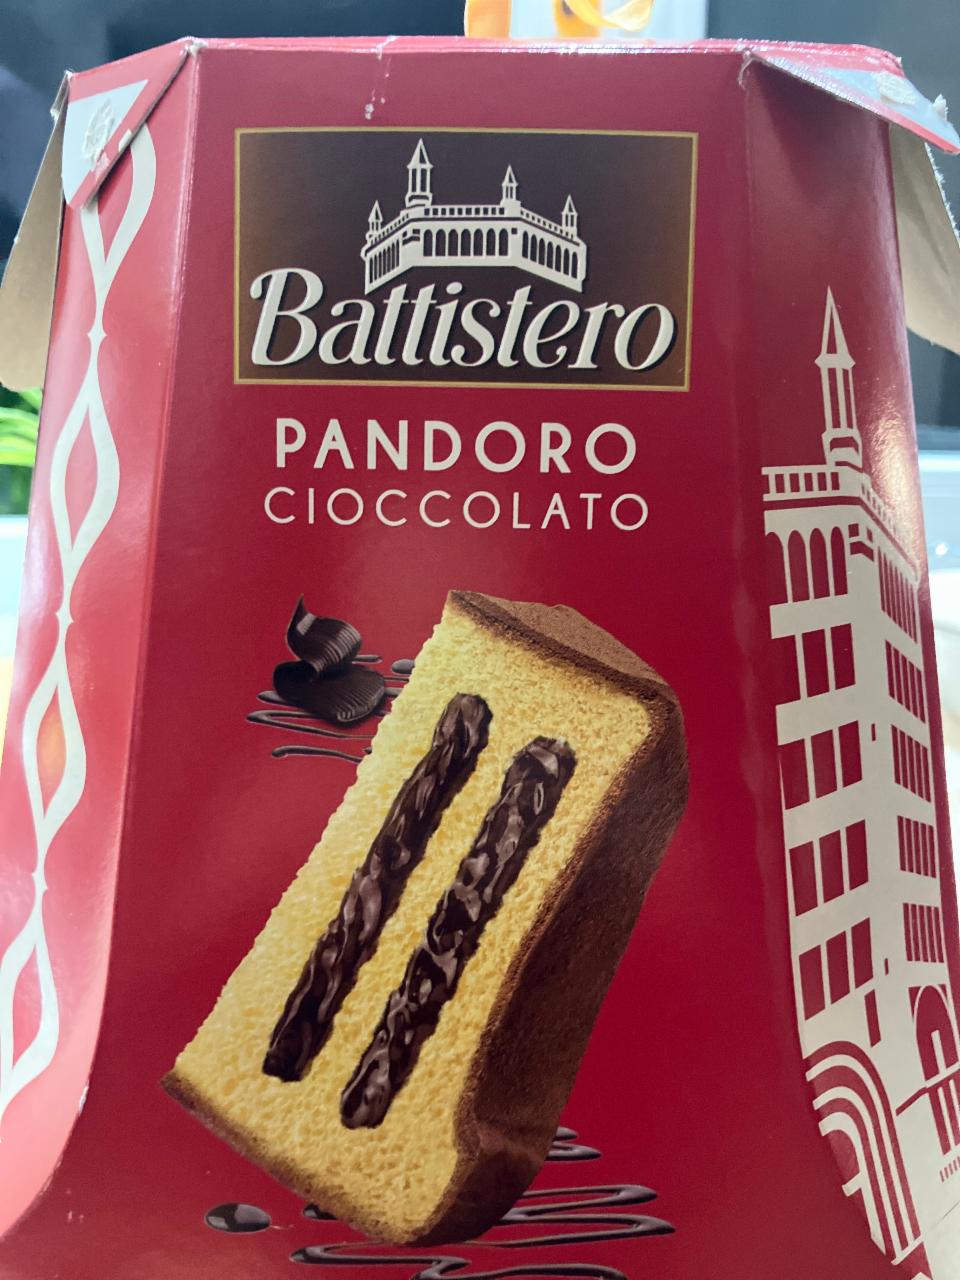 Képek - Pandoro cioccolato Battistero